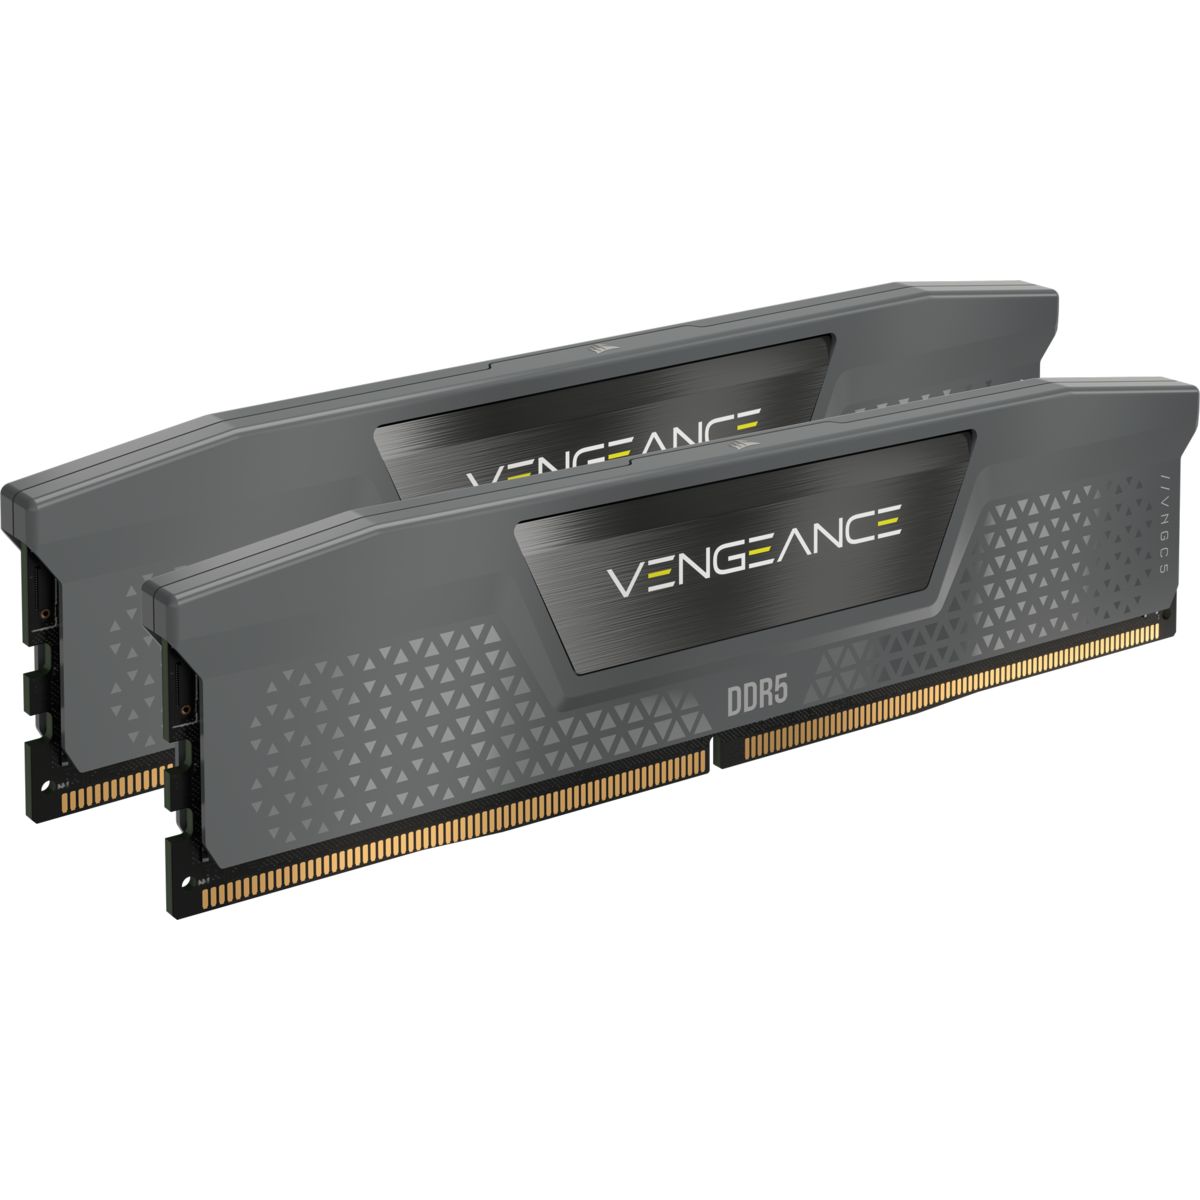 Corsair VENGEANCE 32GB (2x16GB) DDR5 DRAM 5200MT/s C40 Memory Kit — Optimized for AMD